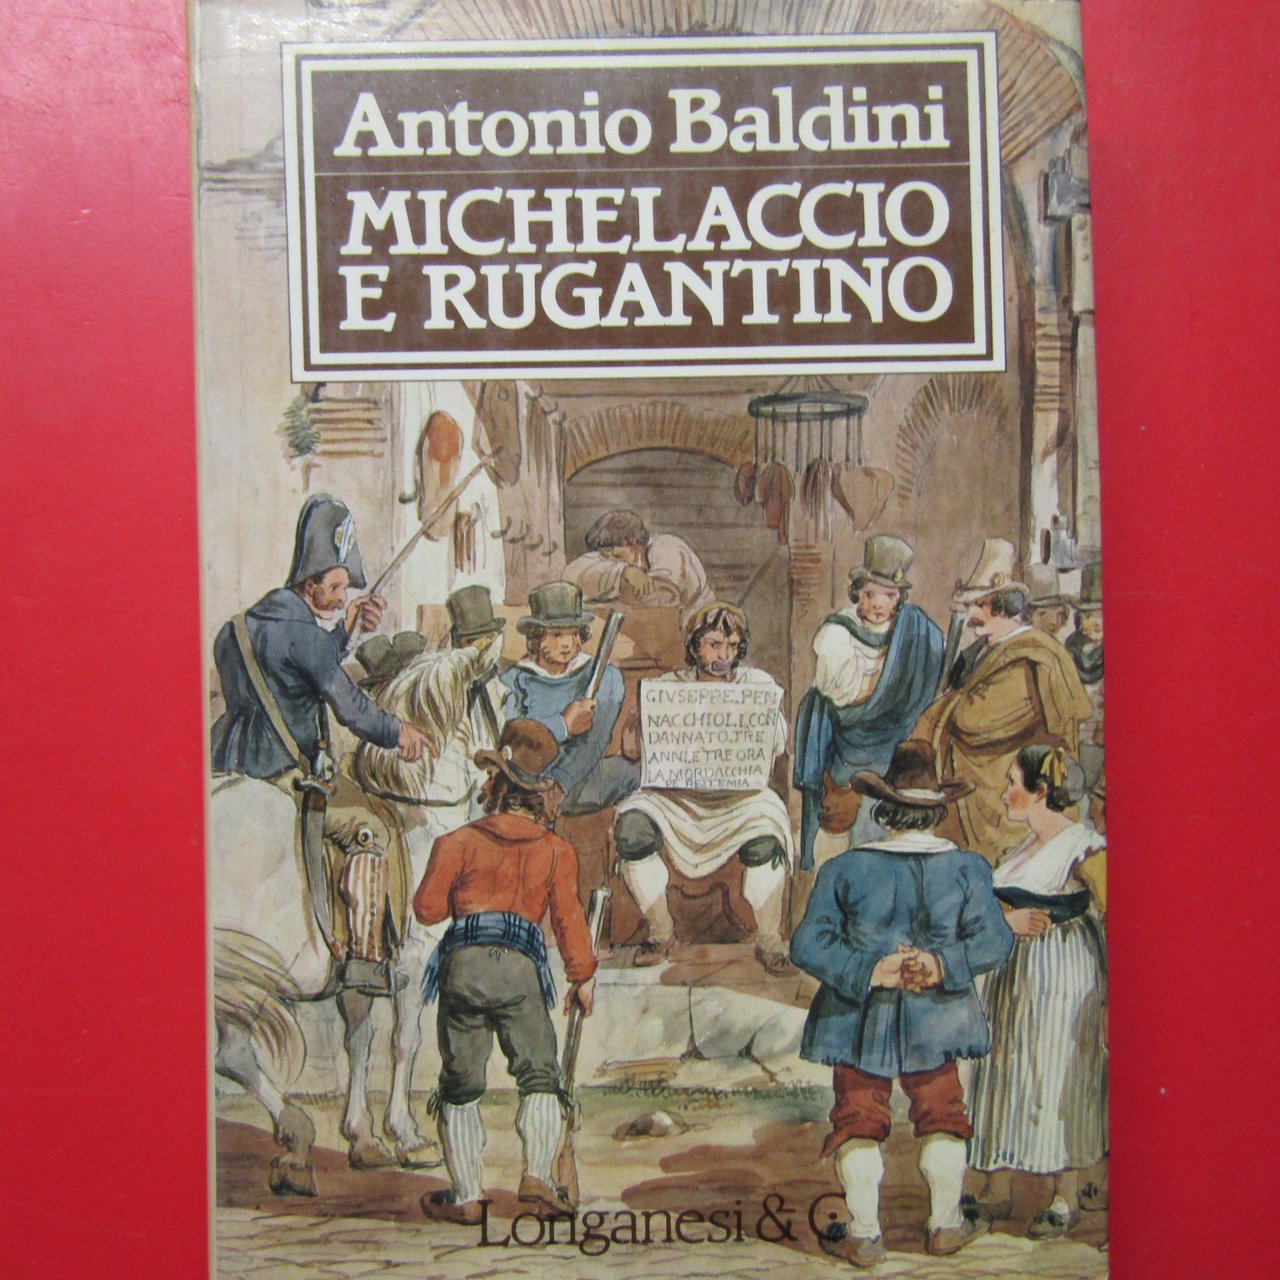 Michelaccio e Rugantino